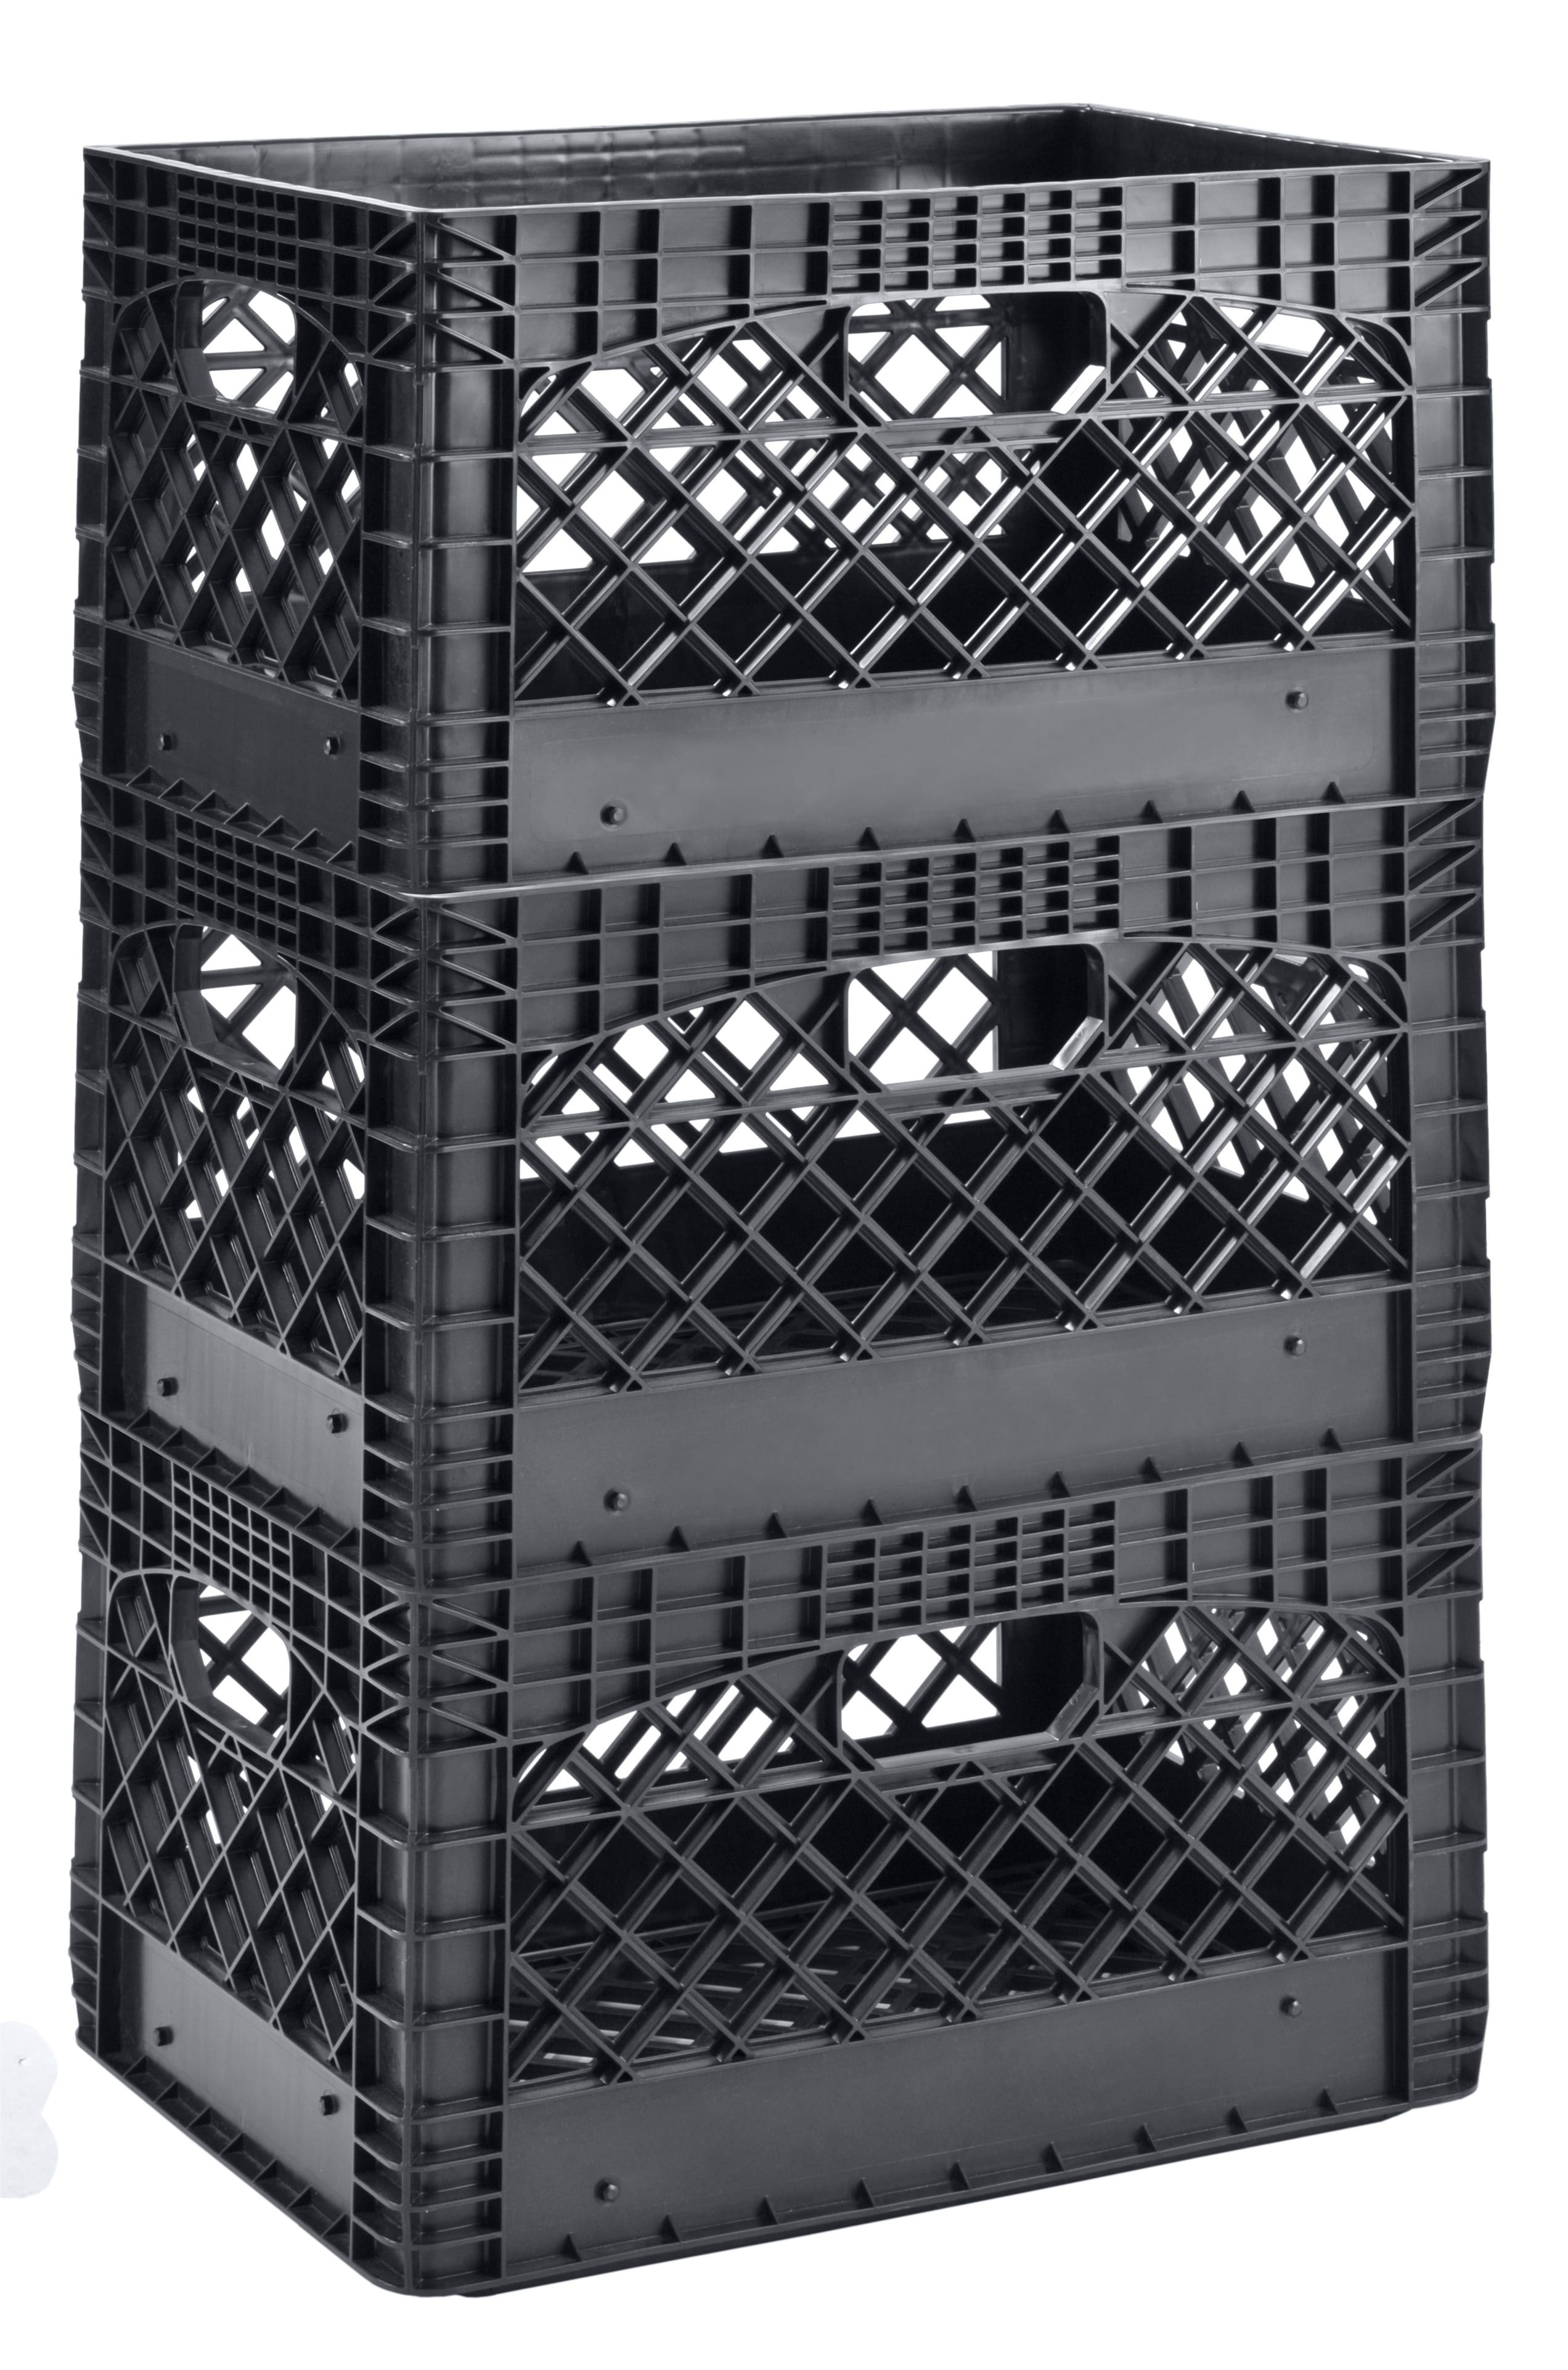 Juggernaut Storage Heavy Duty Stackable Plastic Crate Set & Reviews